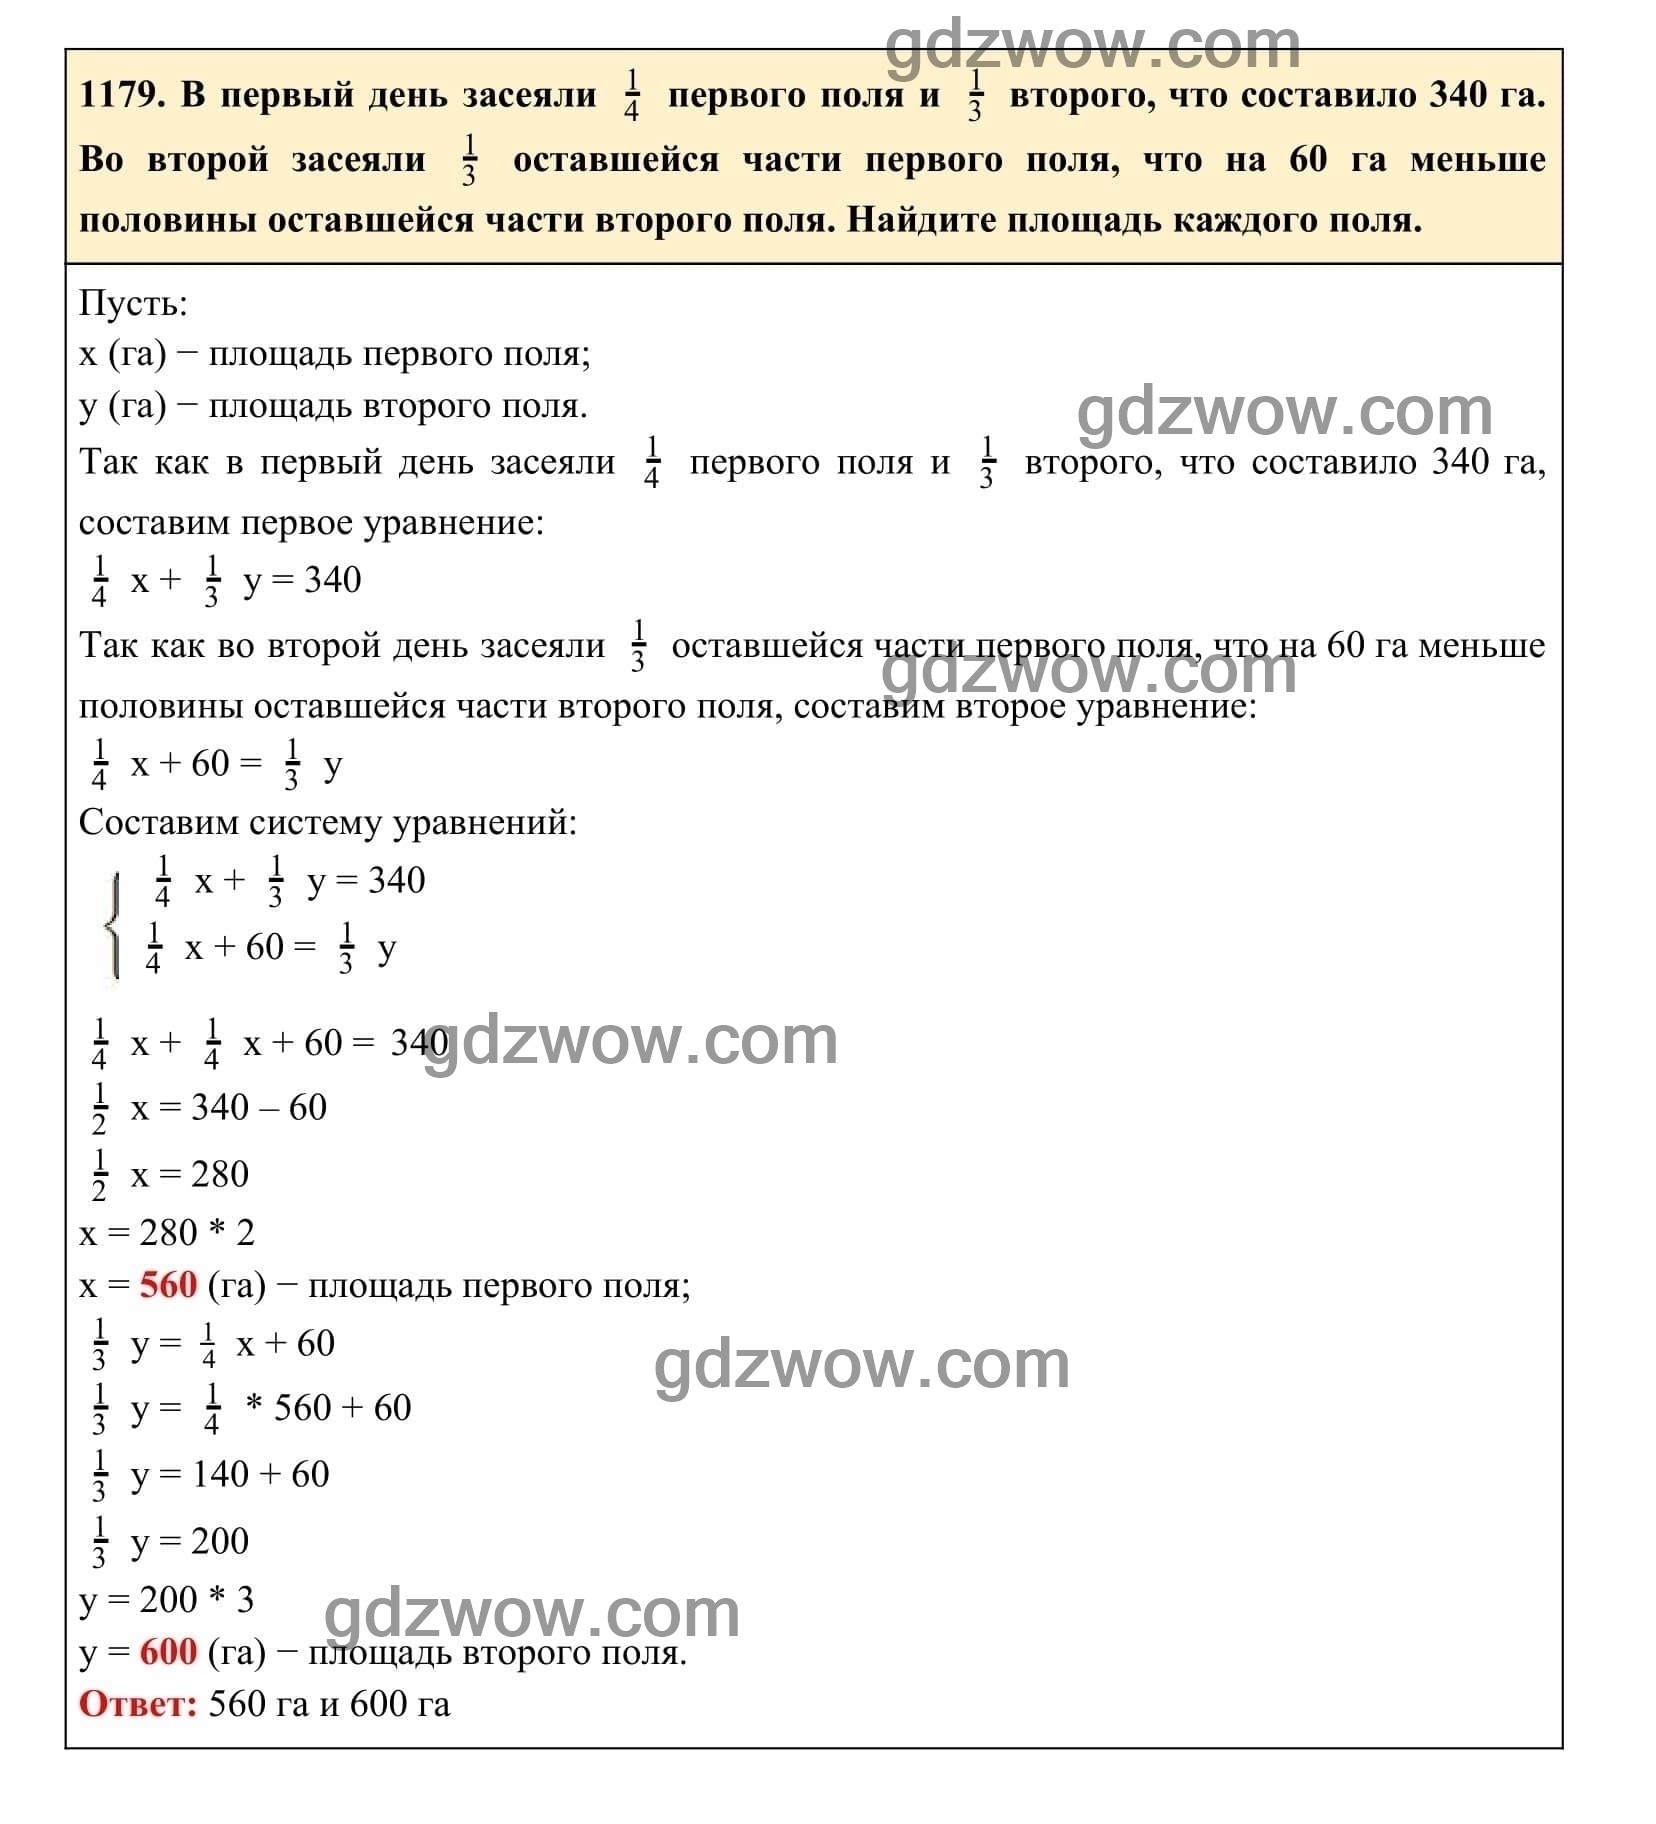 Упражнение 1179 - ГДЗ по Алгебре 7 класс Учебник Макарычев (решебник) - GDZwow